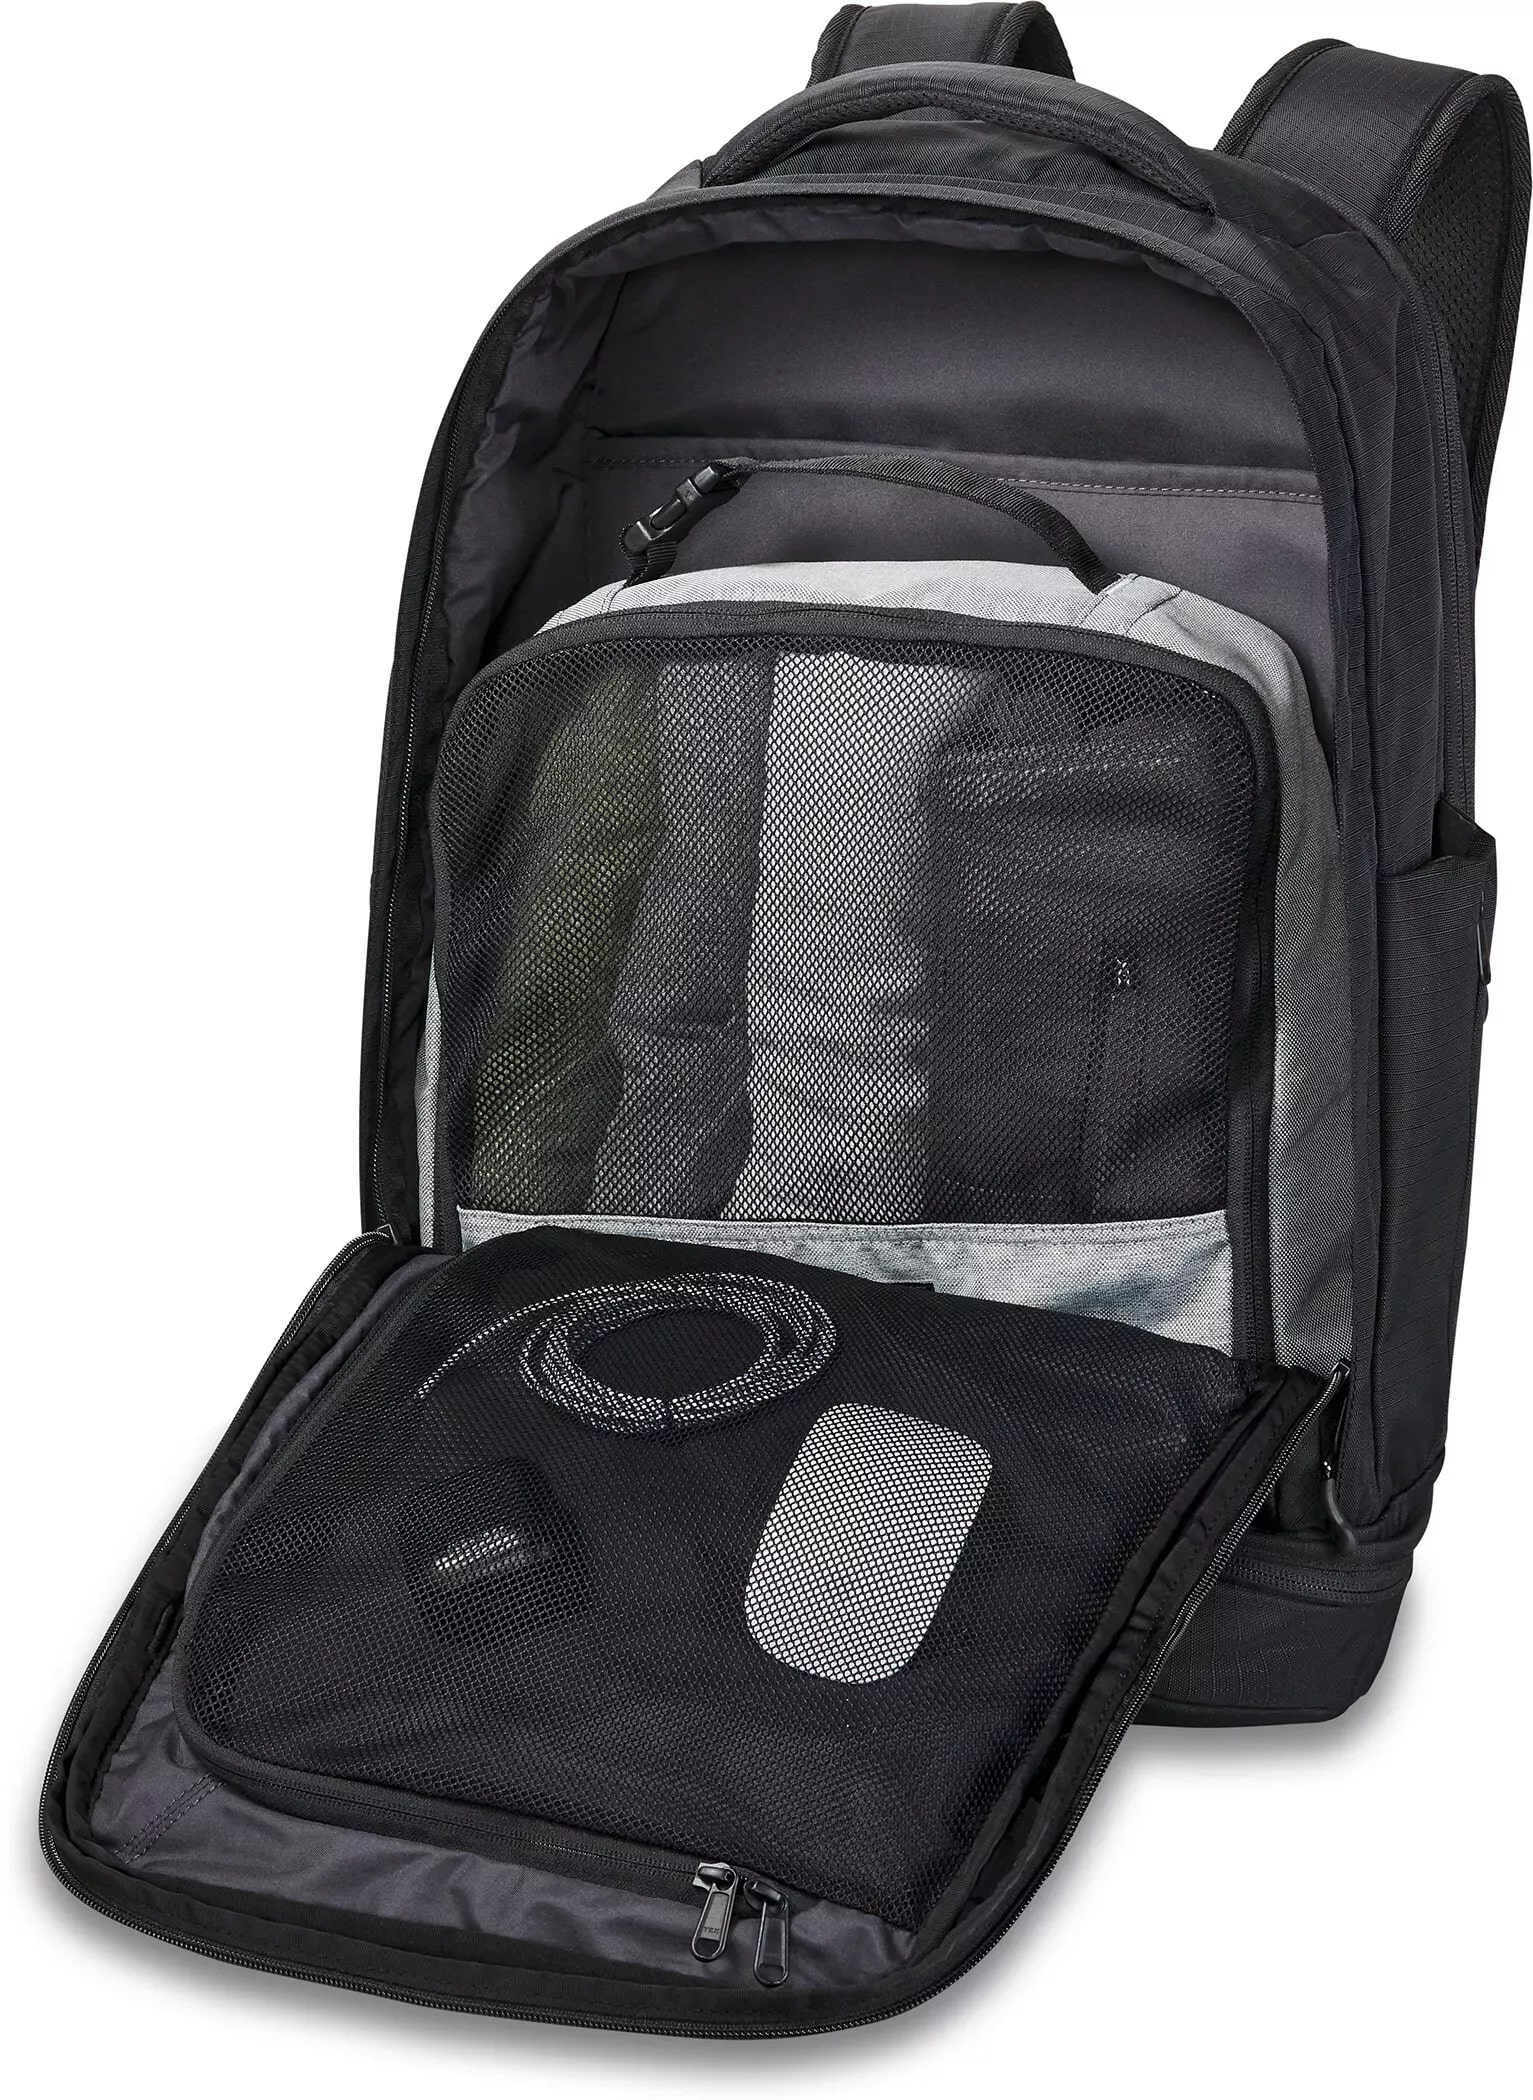 DaKine Verge Backpack 32L